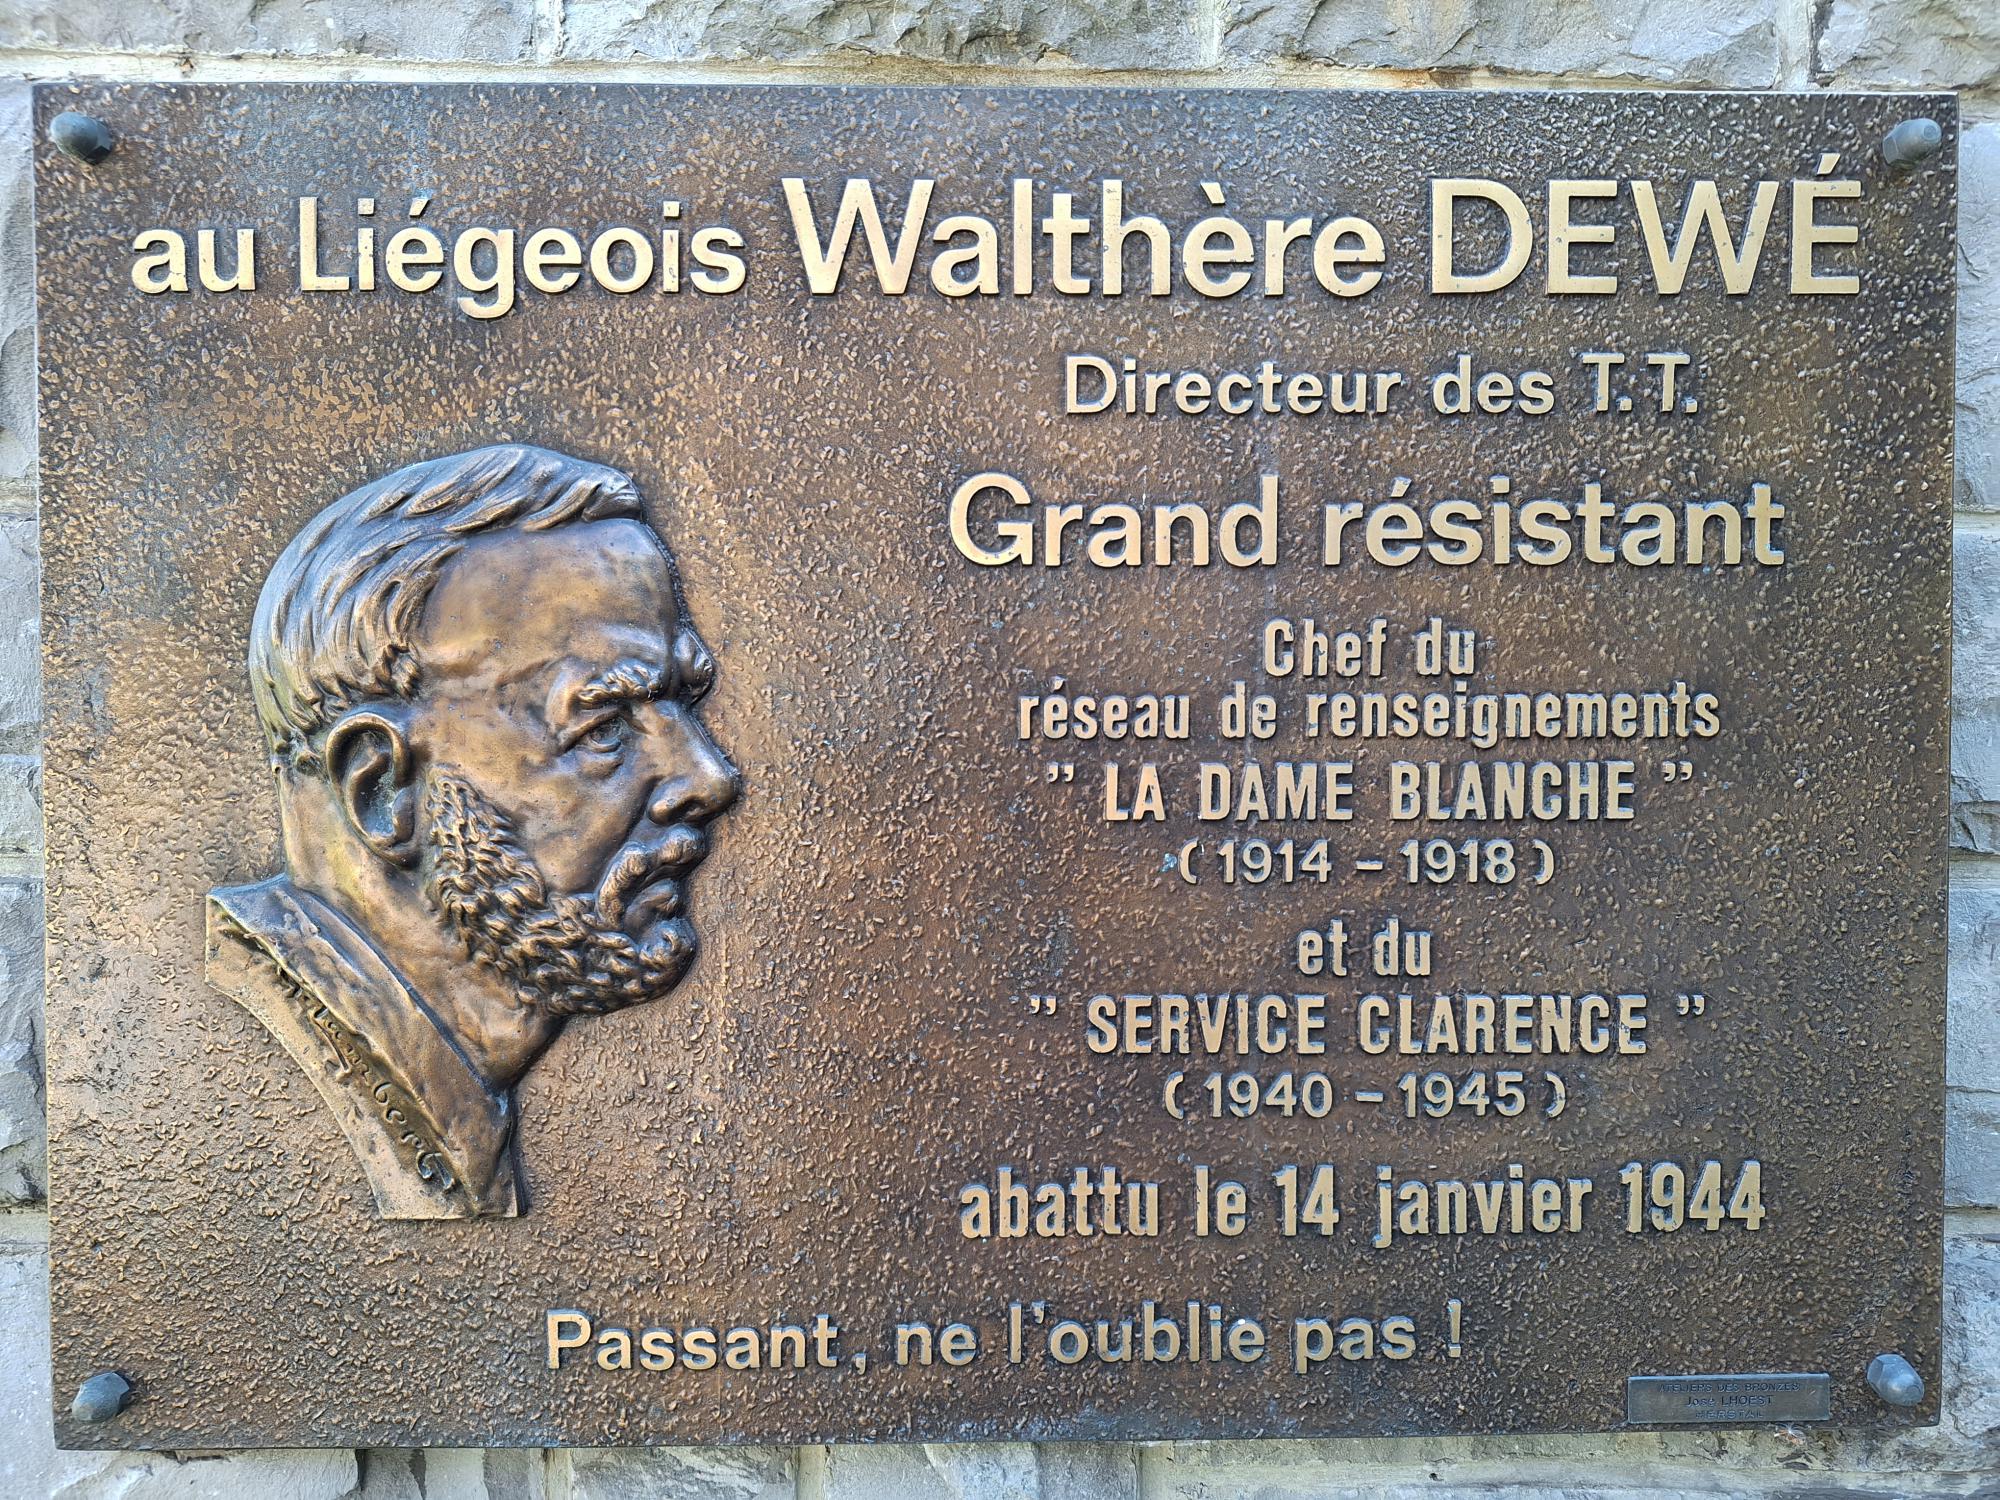 In de Rue Coupée in Luik herinnert deze gedenkplaat aan de inzet van Dewé.